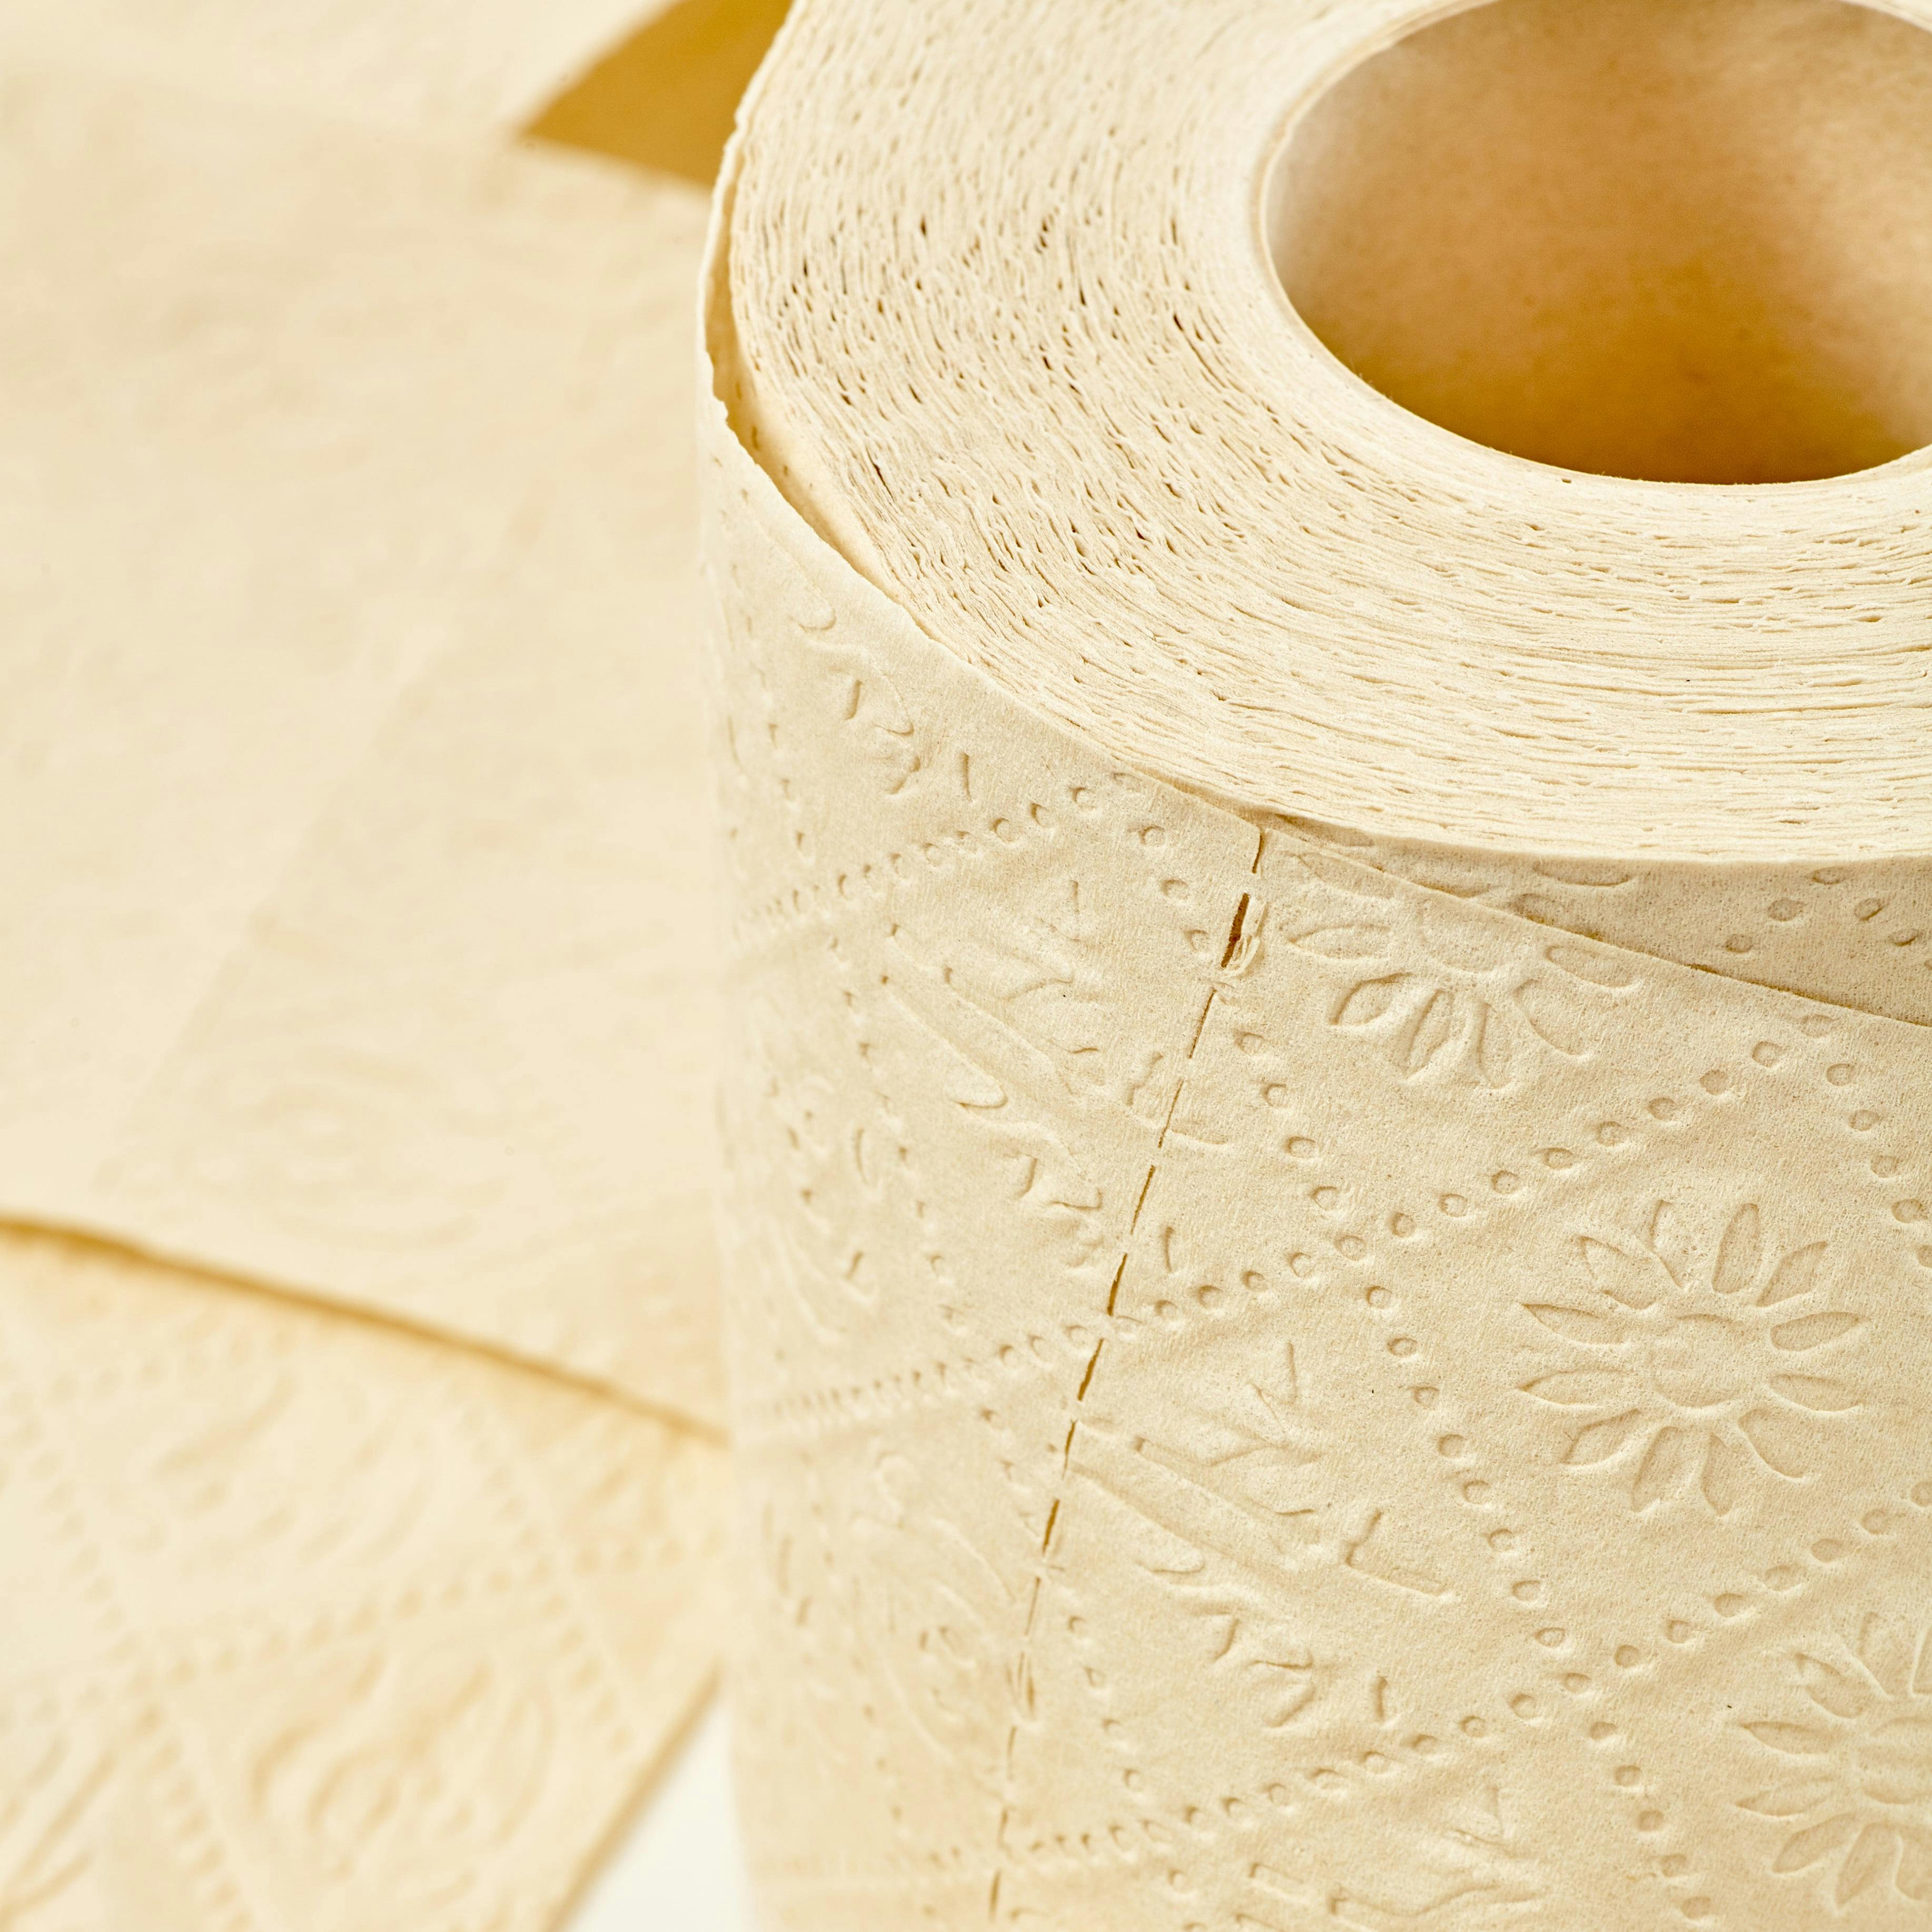 24 x 8 Rollen = 192 Rollen Bamboo-Soft Toilettenpapier aus 100% Bambus 